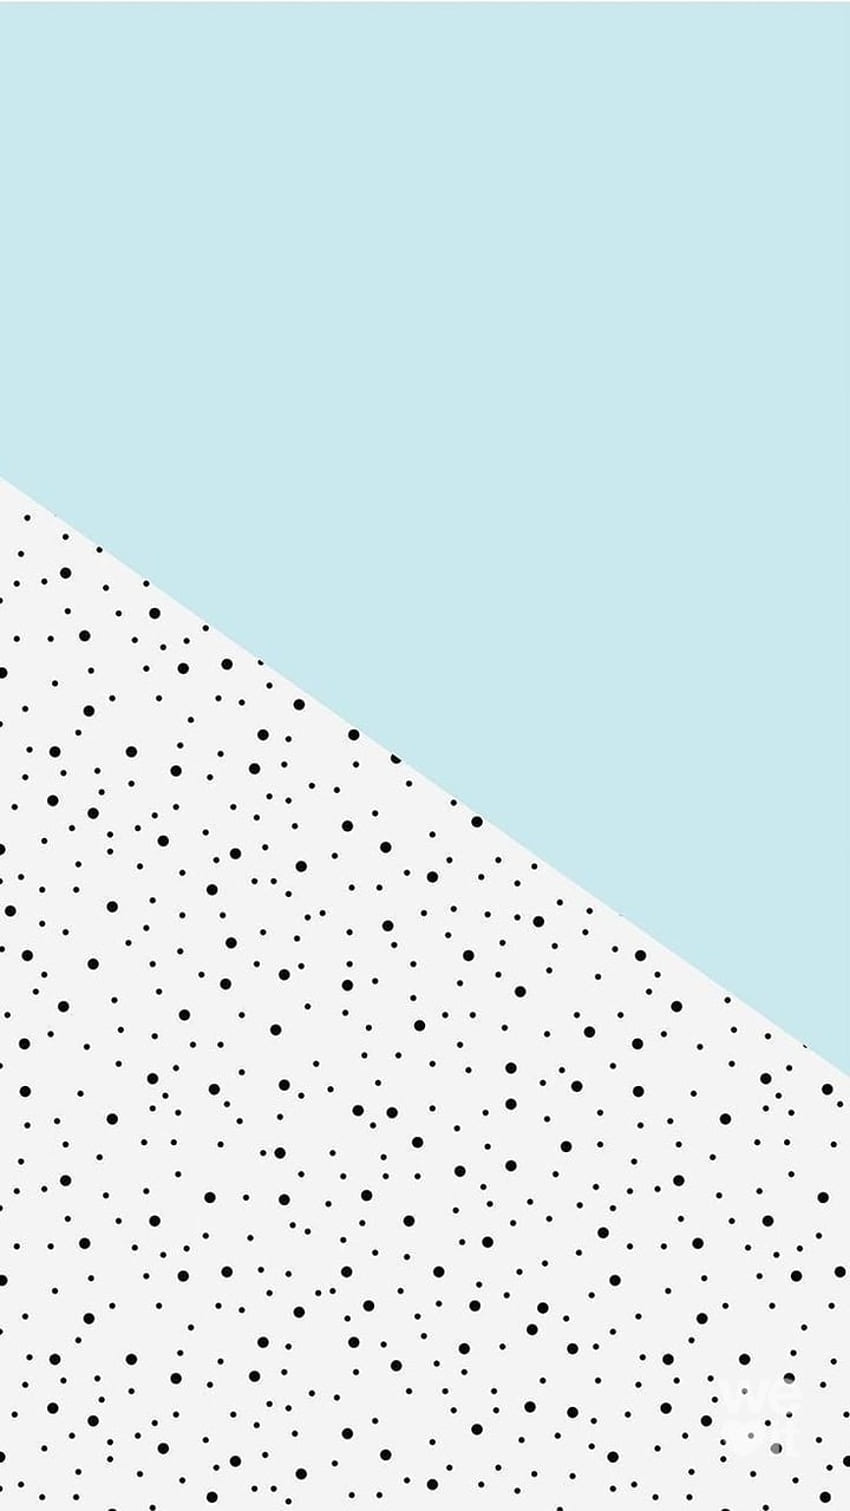 A blue and white geometric pattern - Pattern